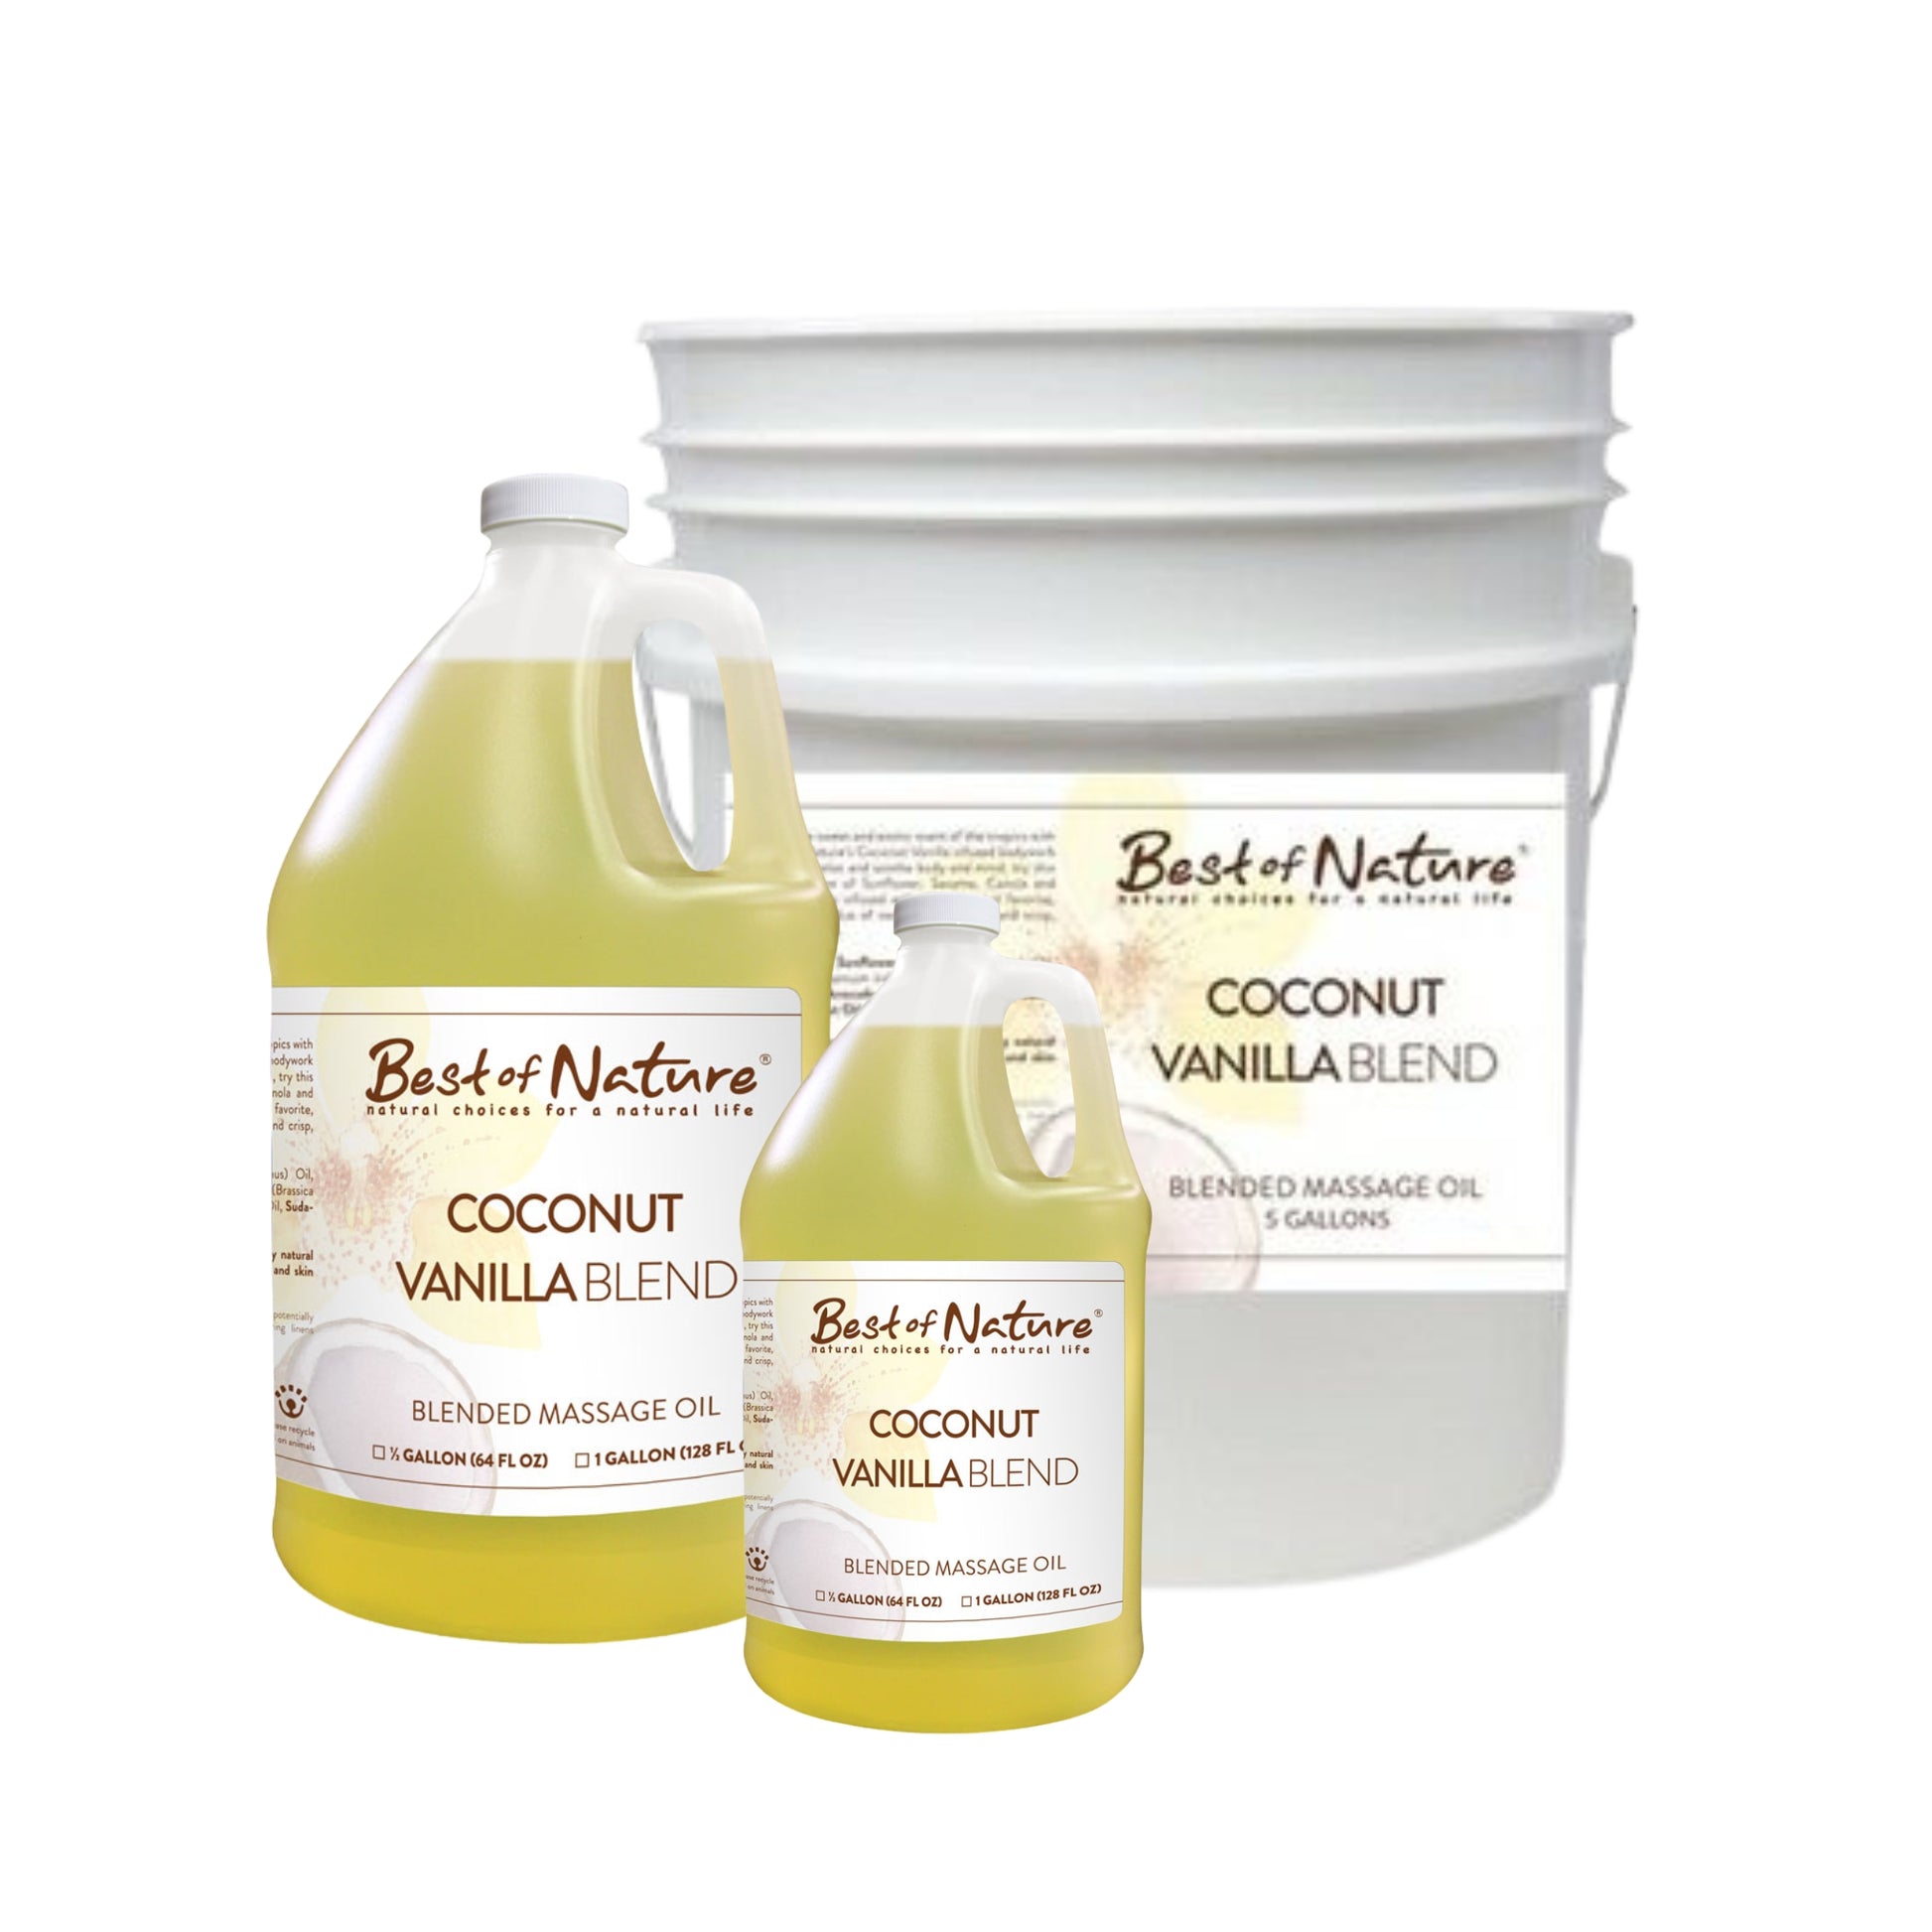 Coconut Vanilla Blend Massage and Body Oil half gallon jug, gallon jug, and 5 gallon pail